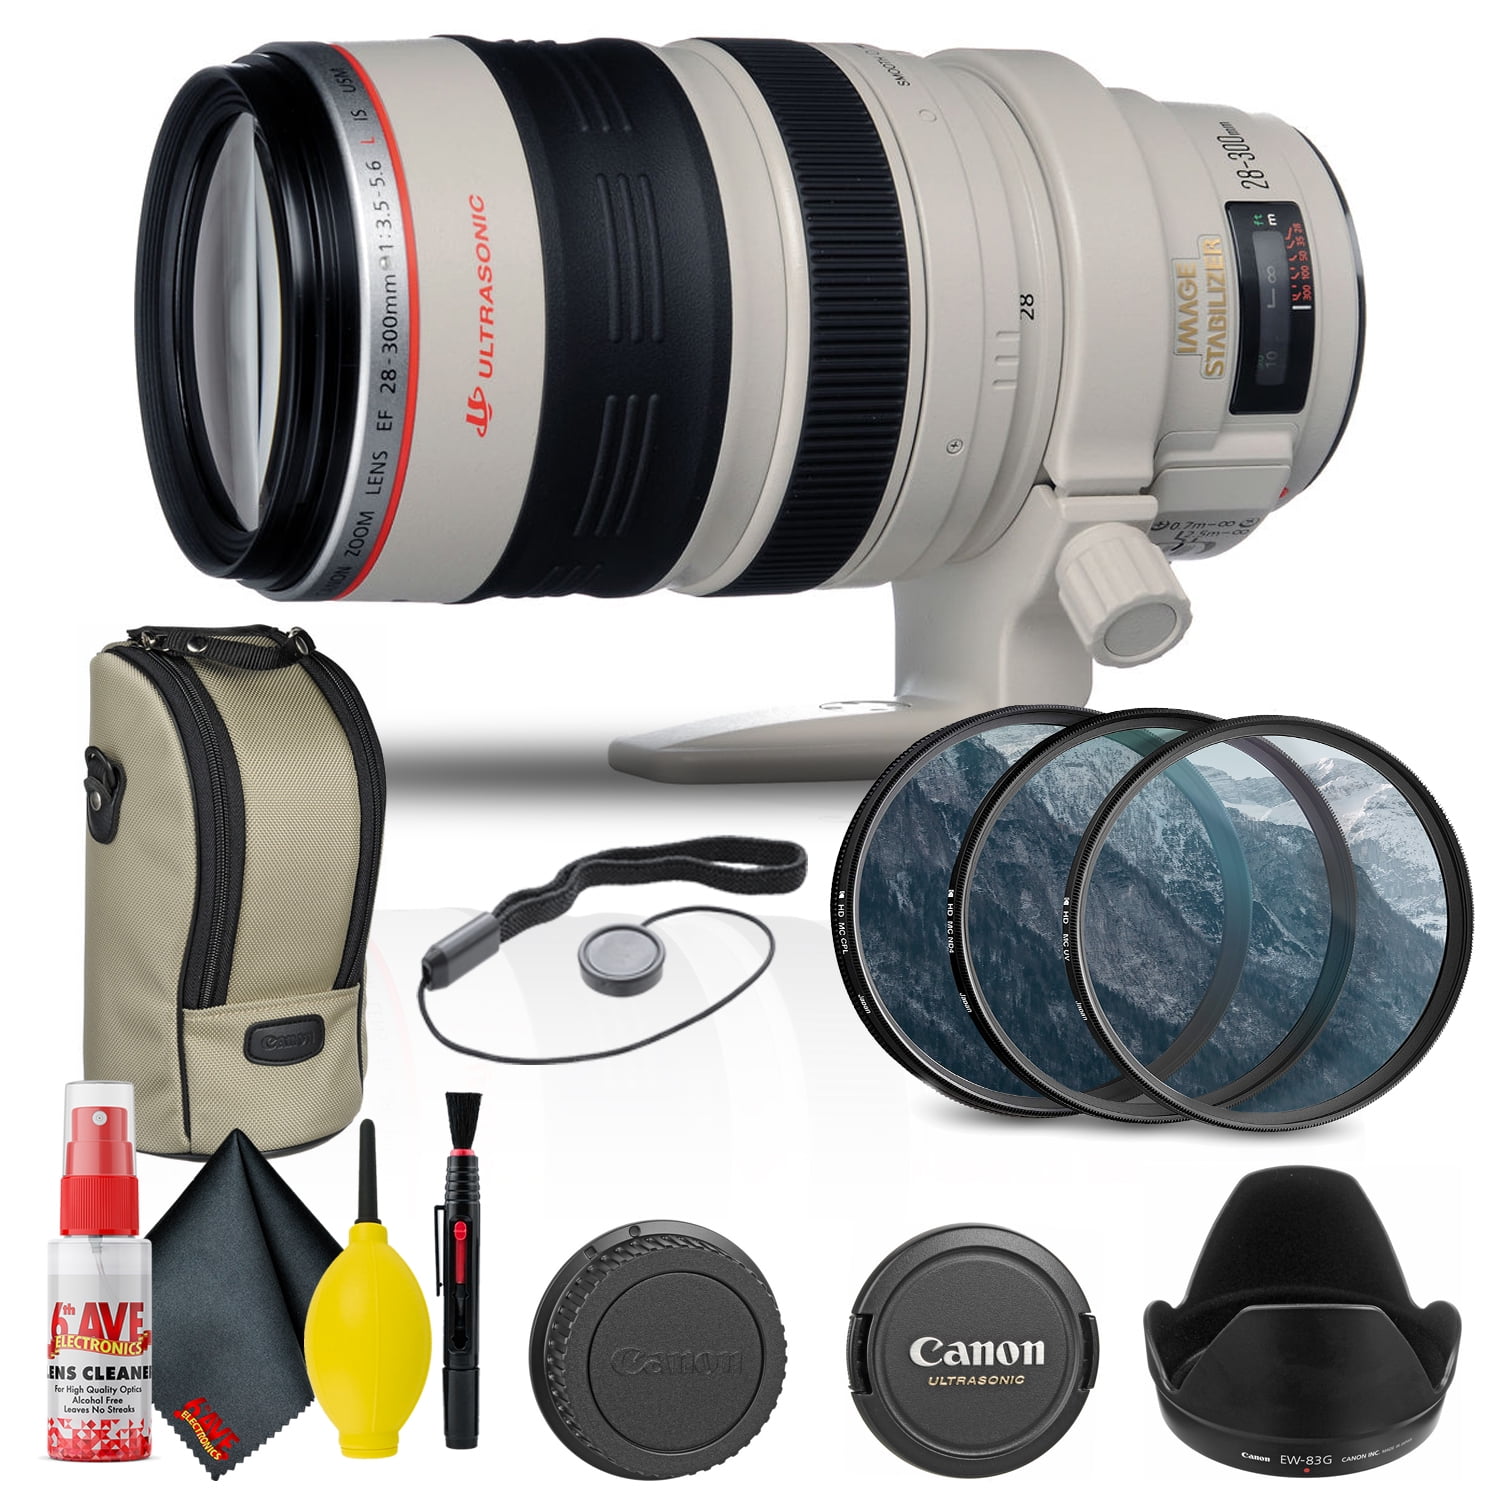 Canon EF 28-300mm f/3.5-5.6L IS USM Lens (9322A002) + Filter Kit + More